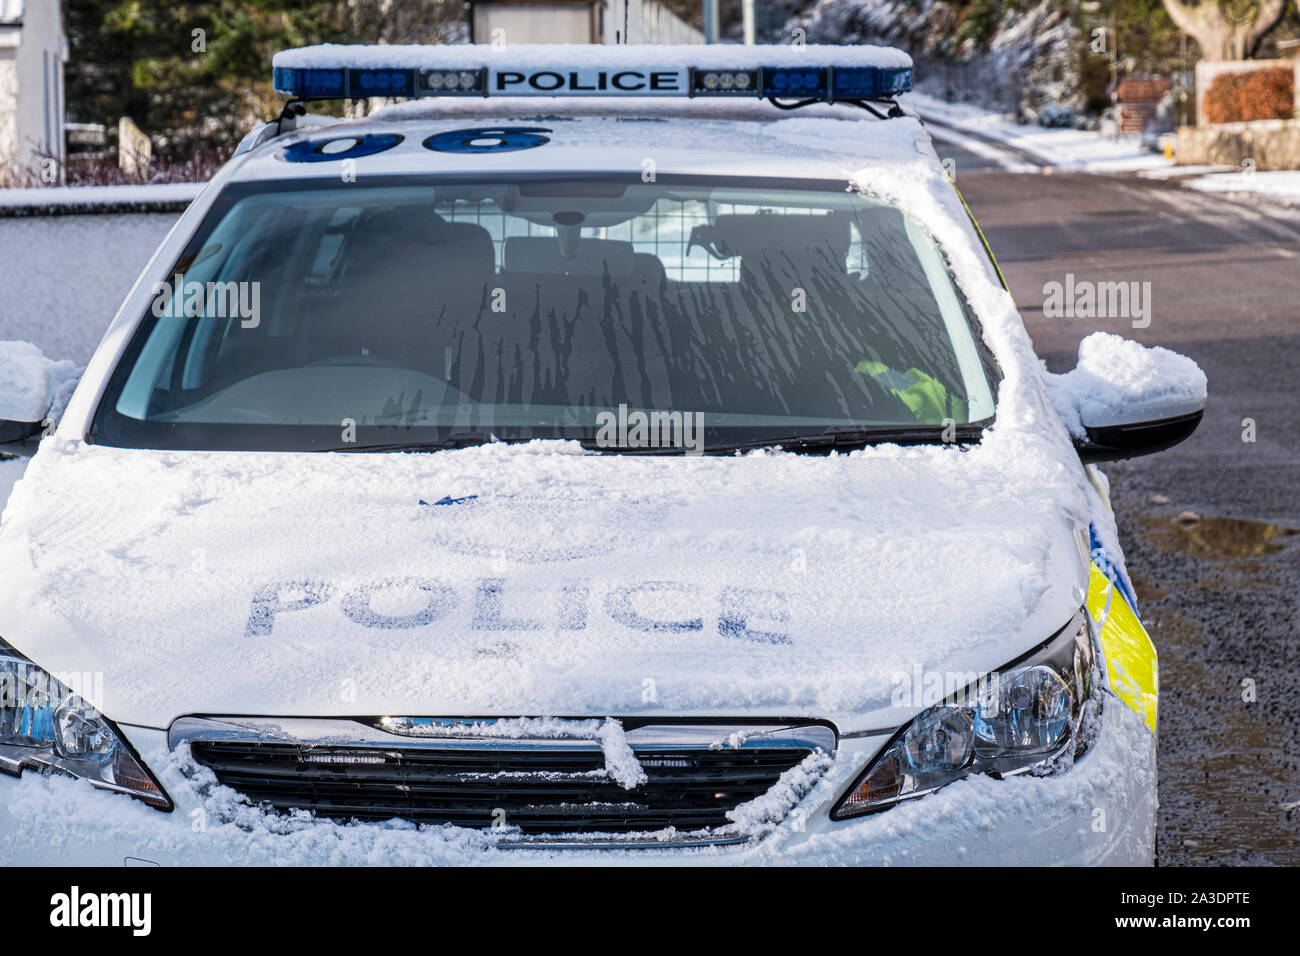 La neige a couvert l'Ecosse la police patrouille policière à l'extérieur de la station de police de Lochcarron Banque D'Images